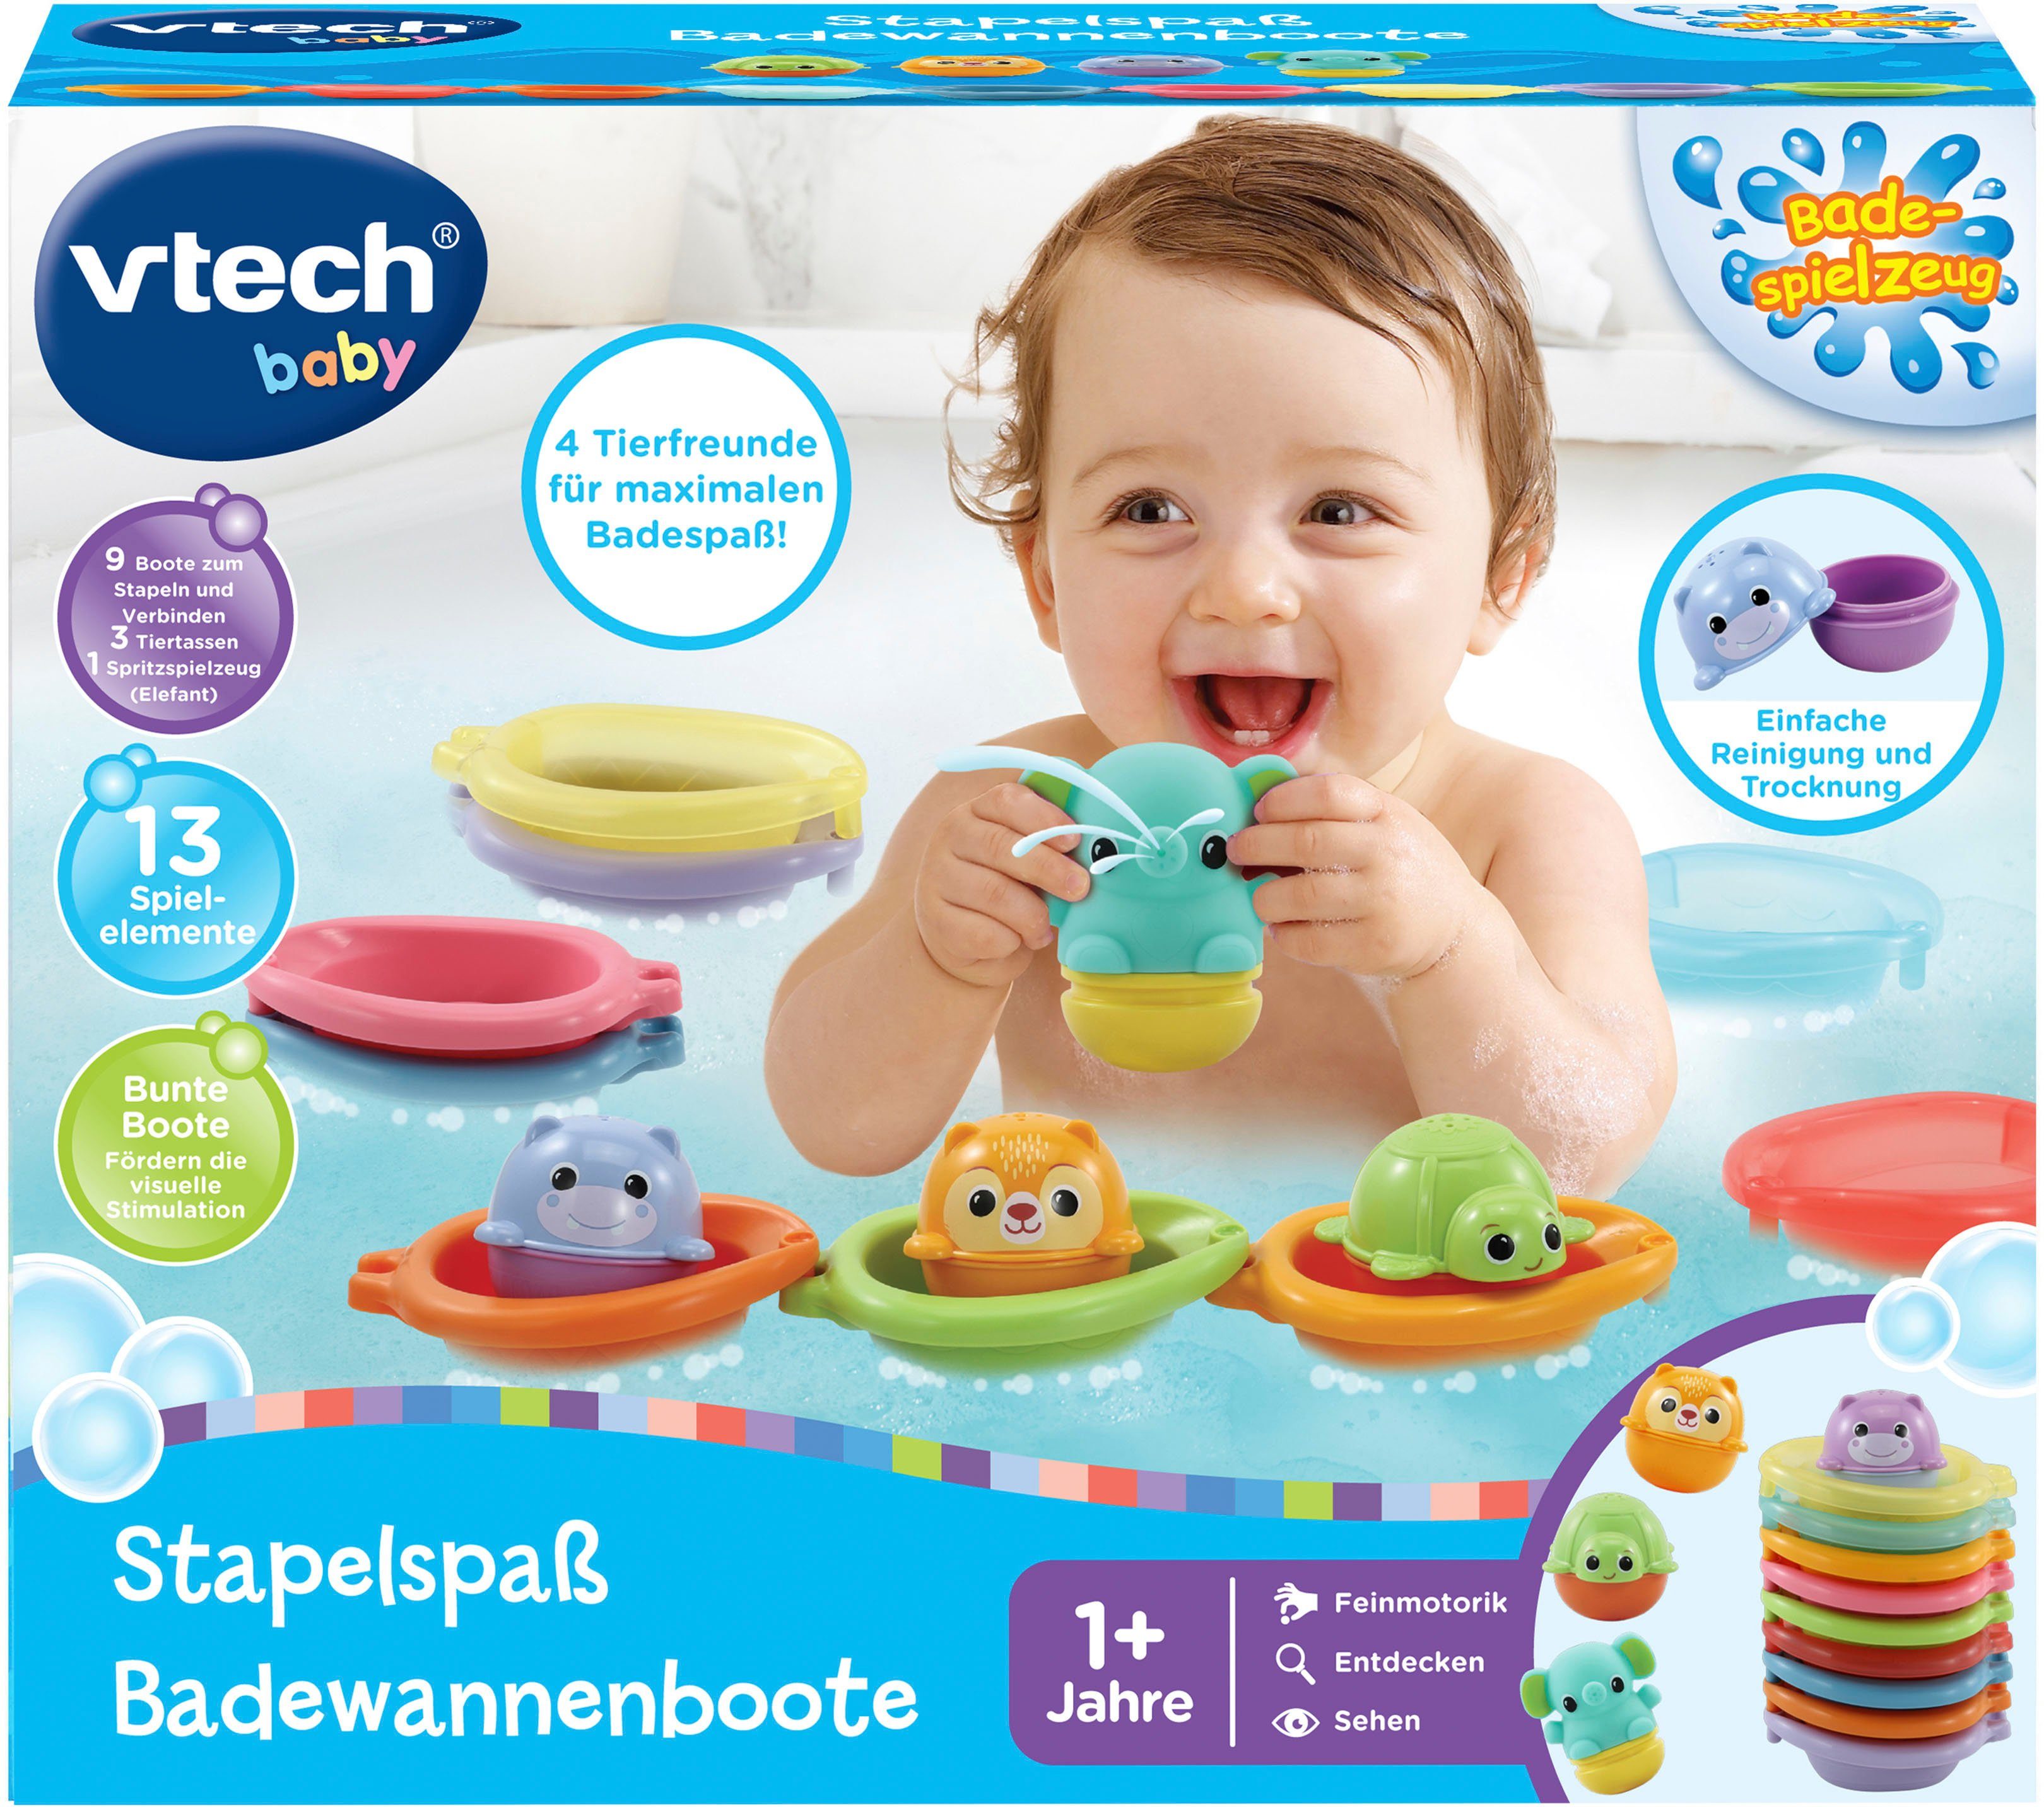 Vtech® Badespielzeug Baby, Vtech Stapelspaß Badewannenboote